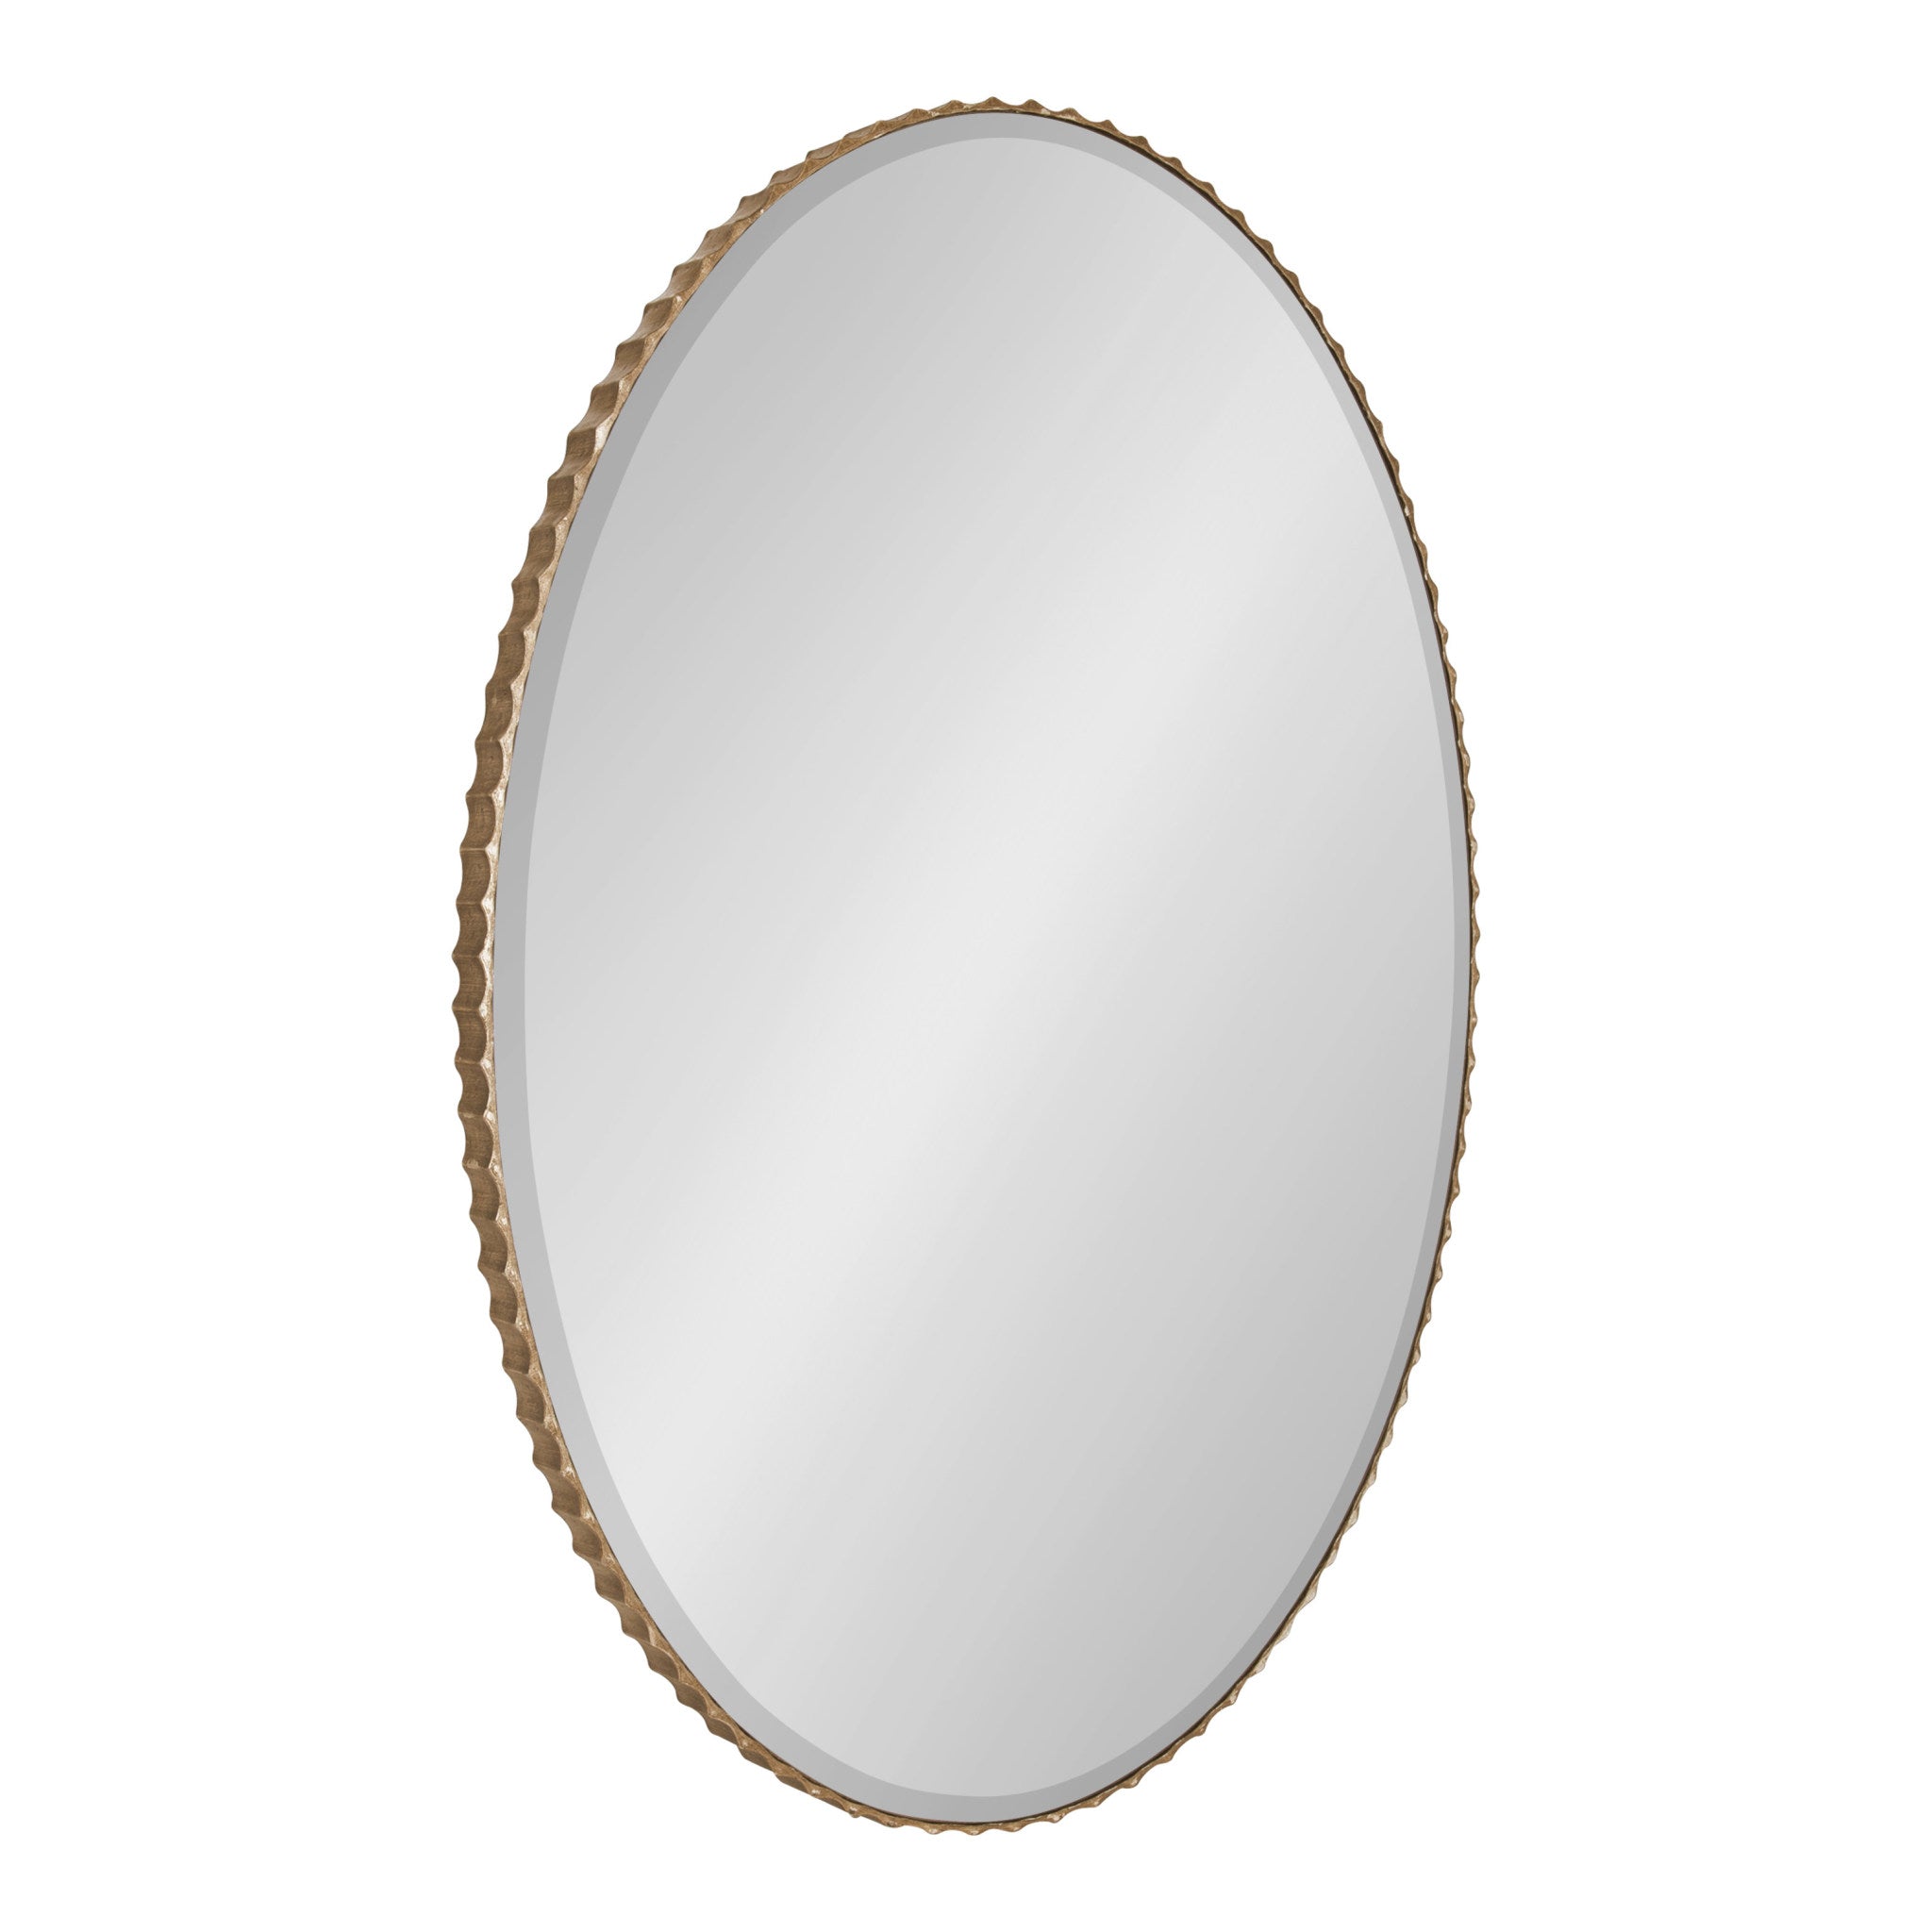 Elmora Fluted Oval Wall Mirror